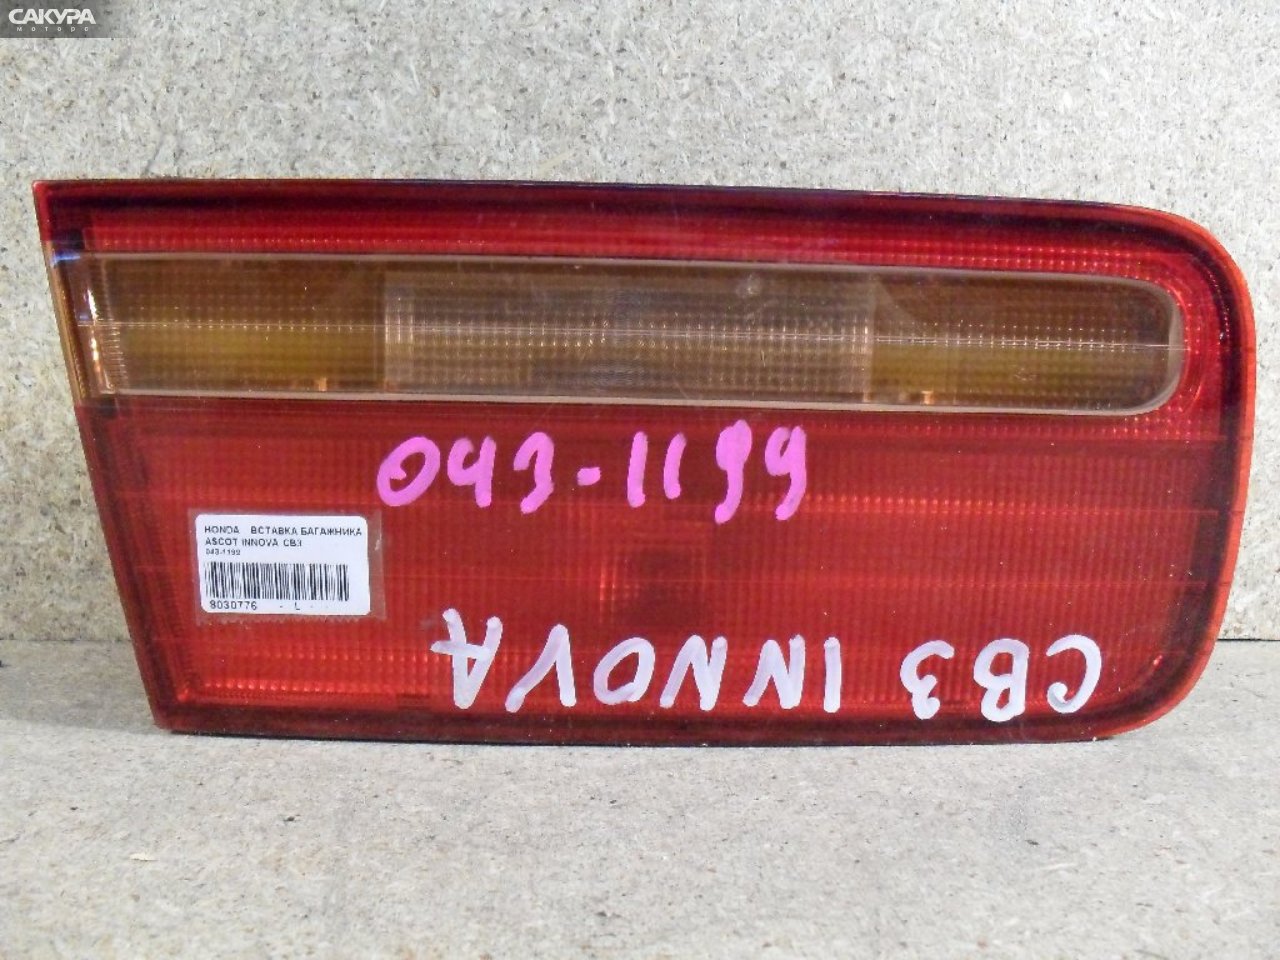 Фонарь вставка багажника левый Honda Ascot Innova CB3 043-1199: купить в Сакура Абакан.